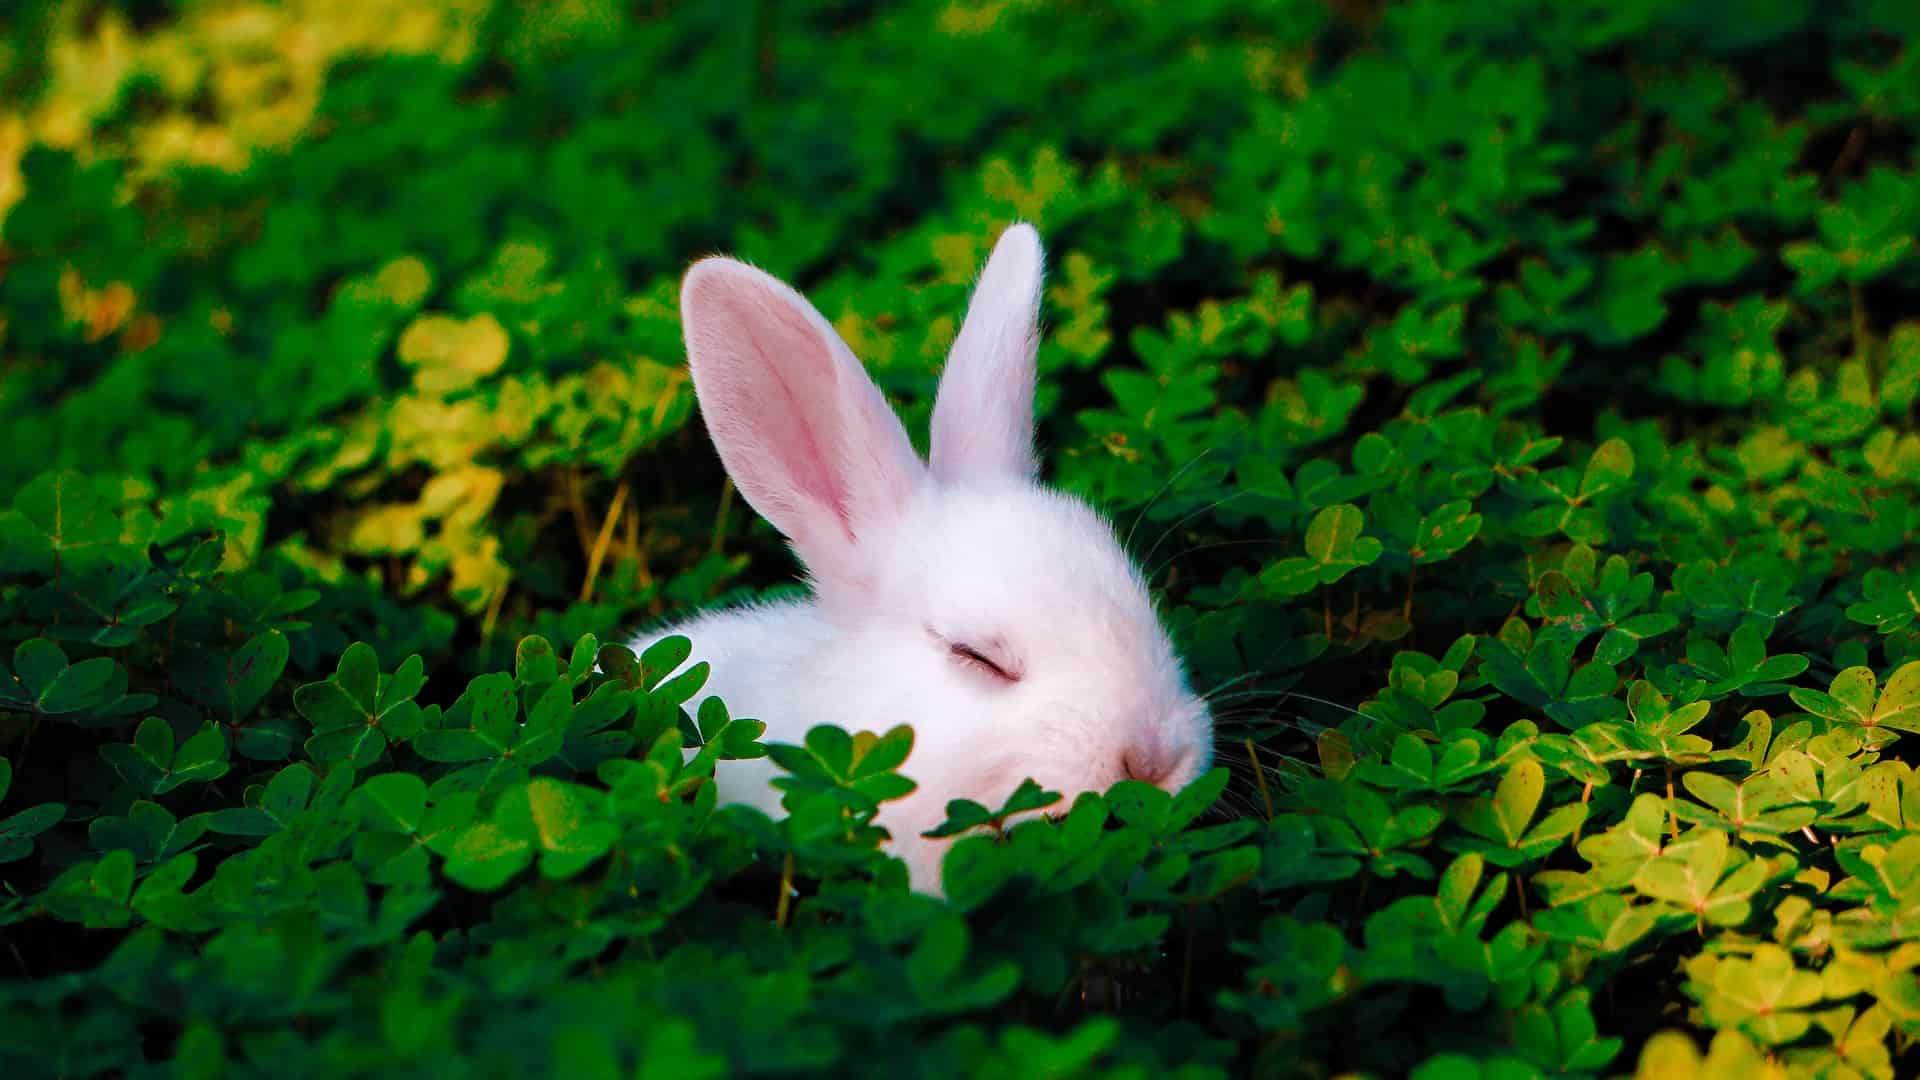 White rabbit sleeping in clover